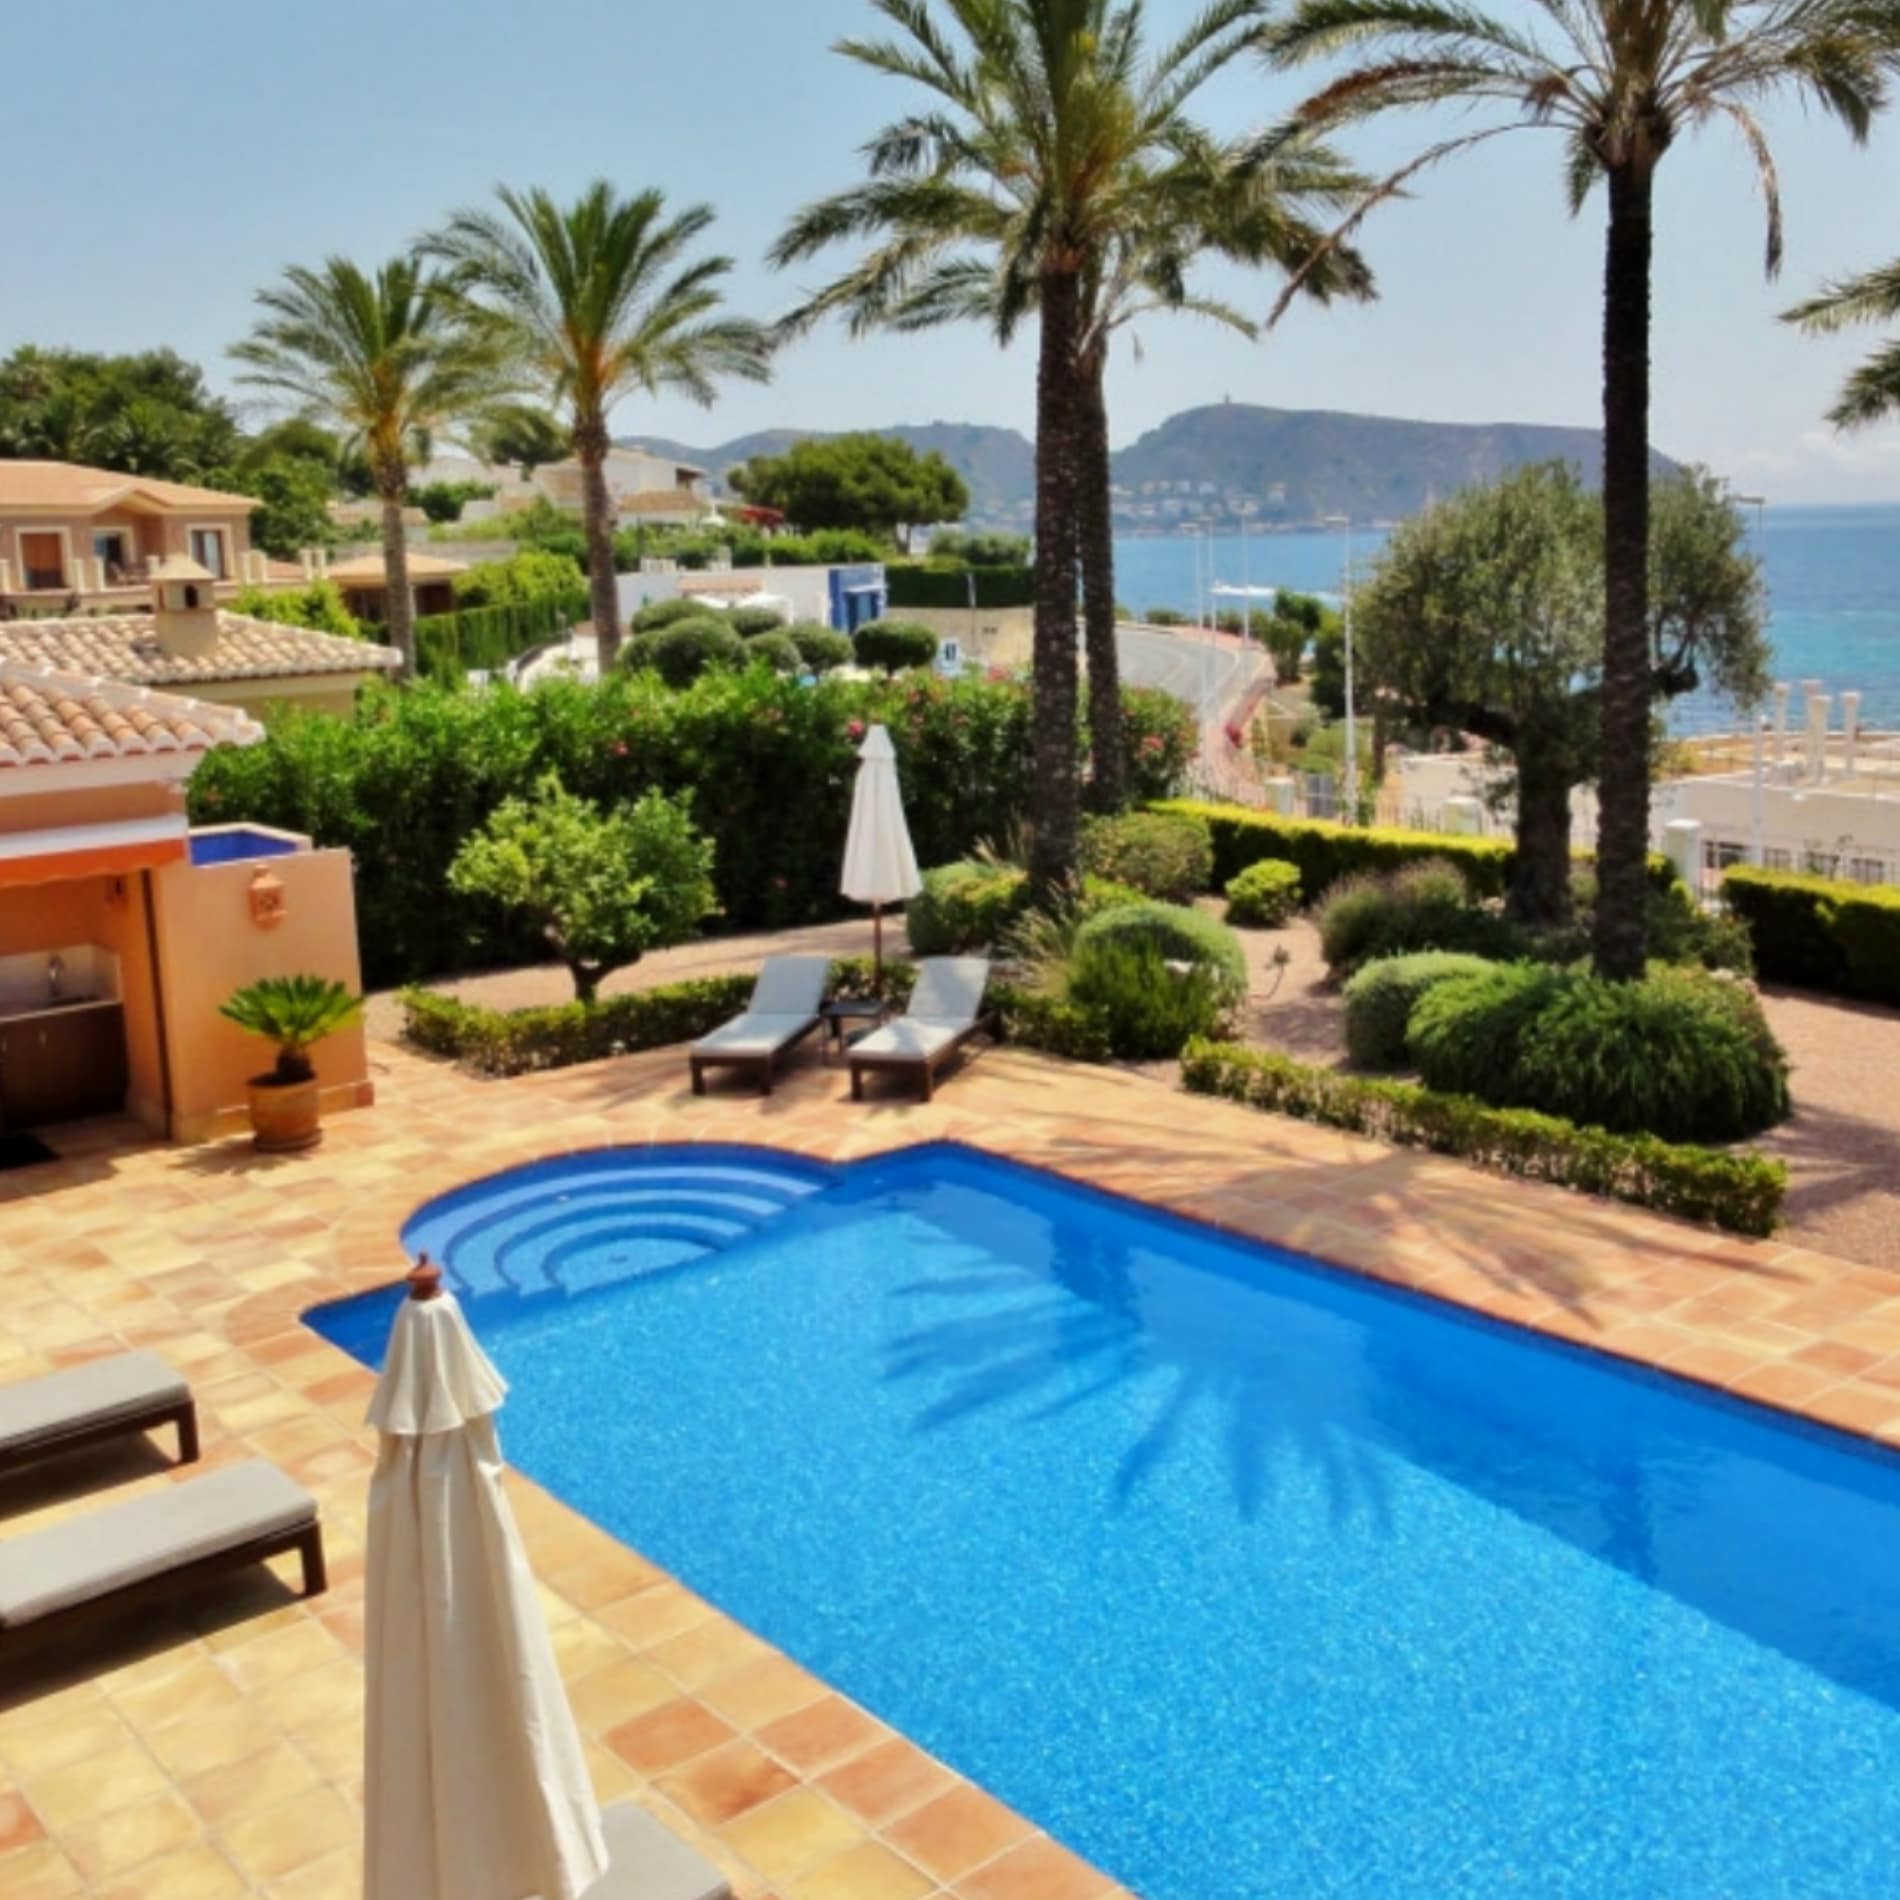 Zwembad met helder blauw water omgeven door zonnig terras met ligbedden', palmbomen en zeezicht